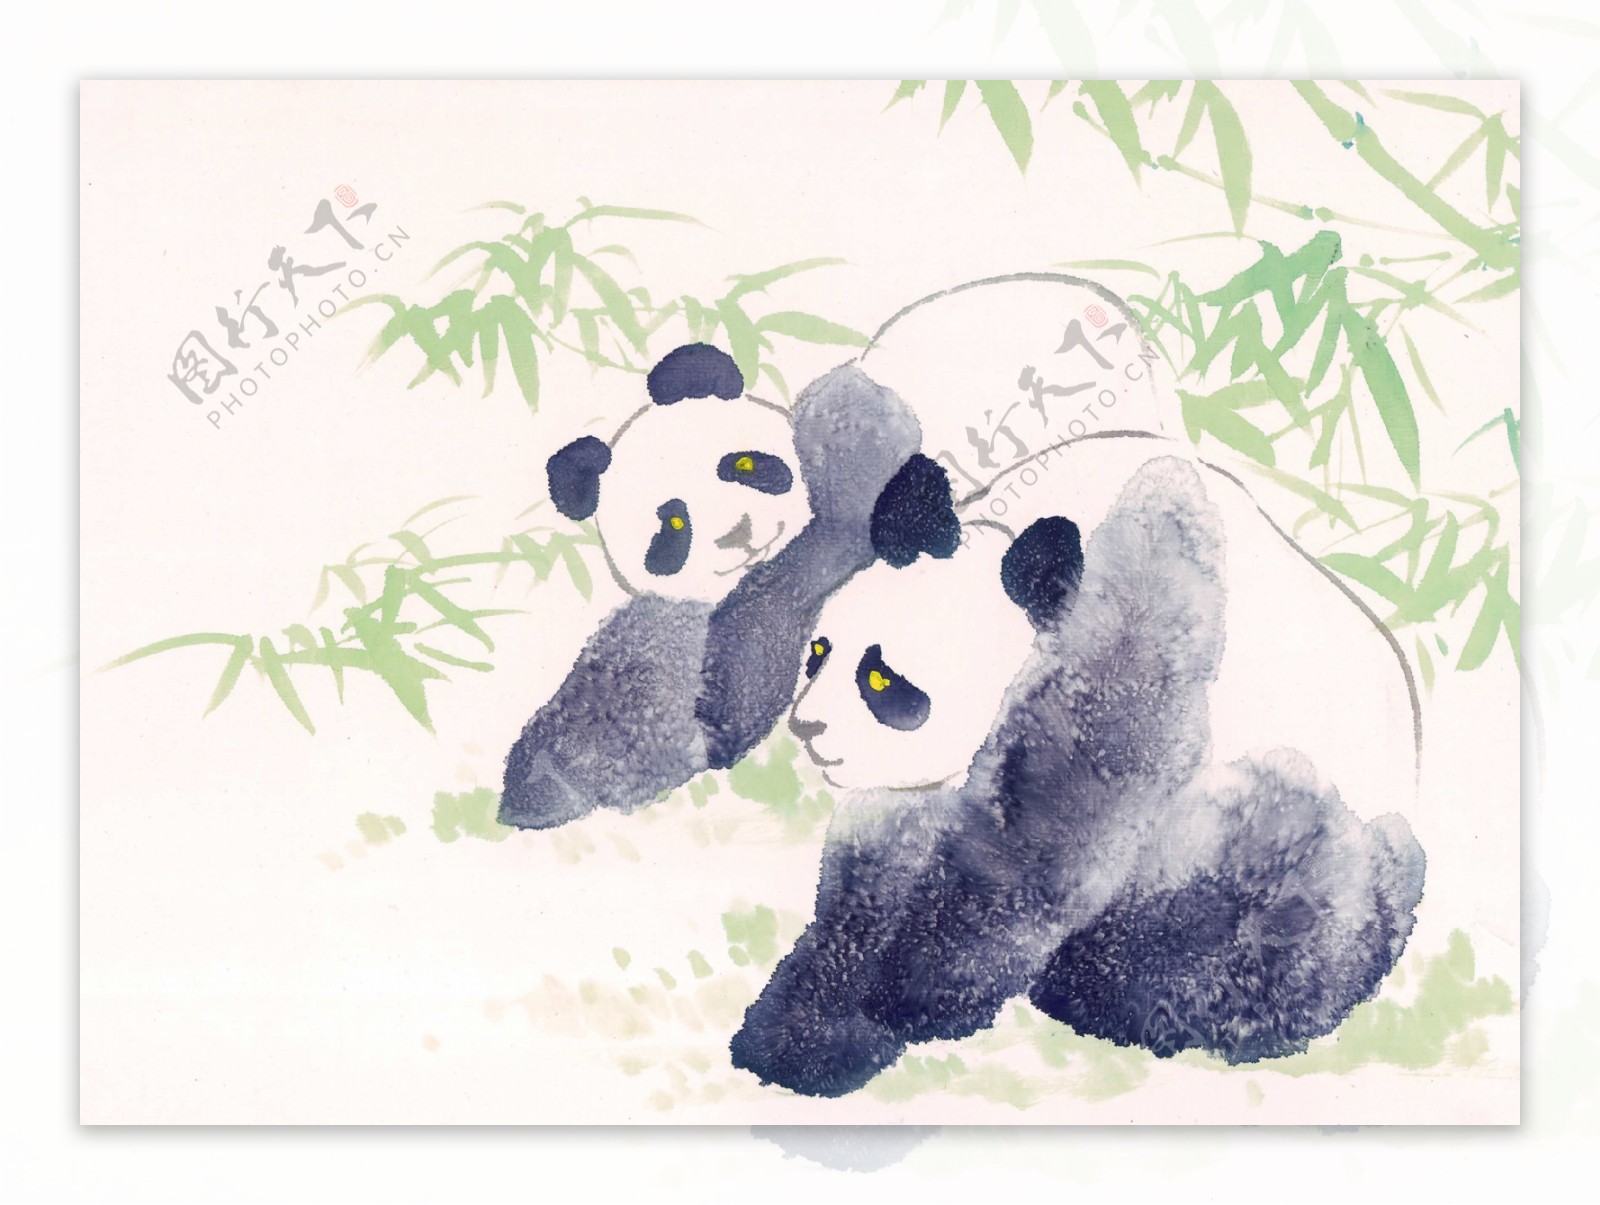 水墨画大熊猫